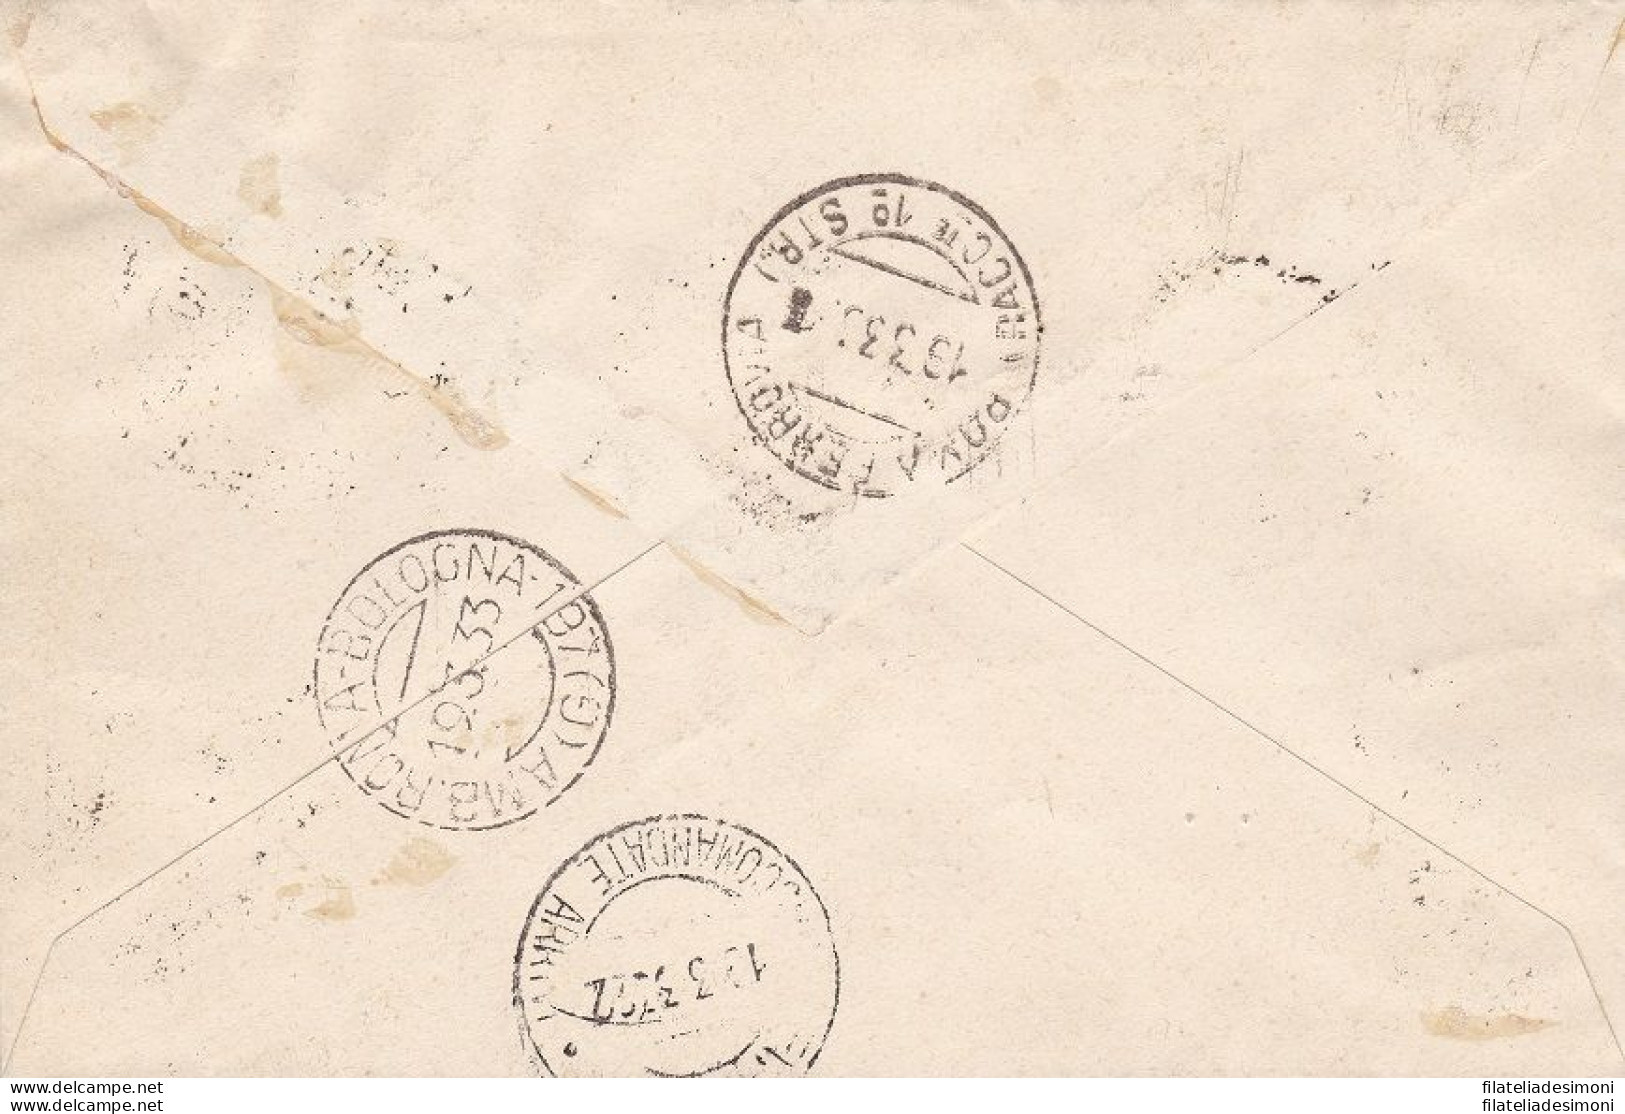 1933 LIBIA, Posta Aerea N° 8/13 - 7a Fiera Di Tripoli La Serie Su Lettera Viagg - Libia